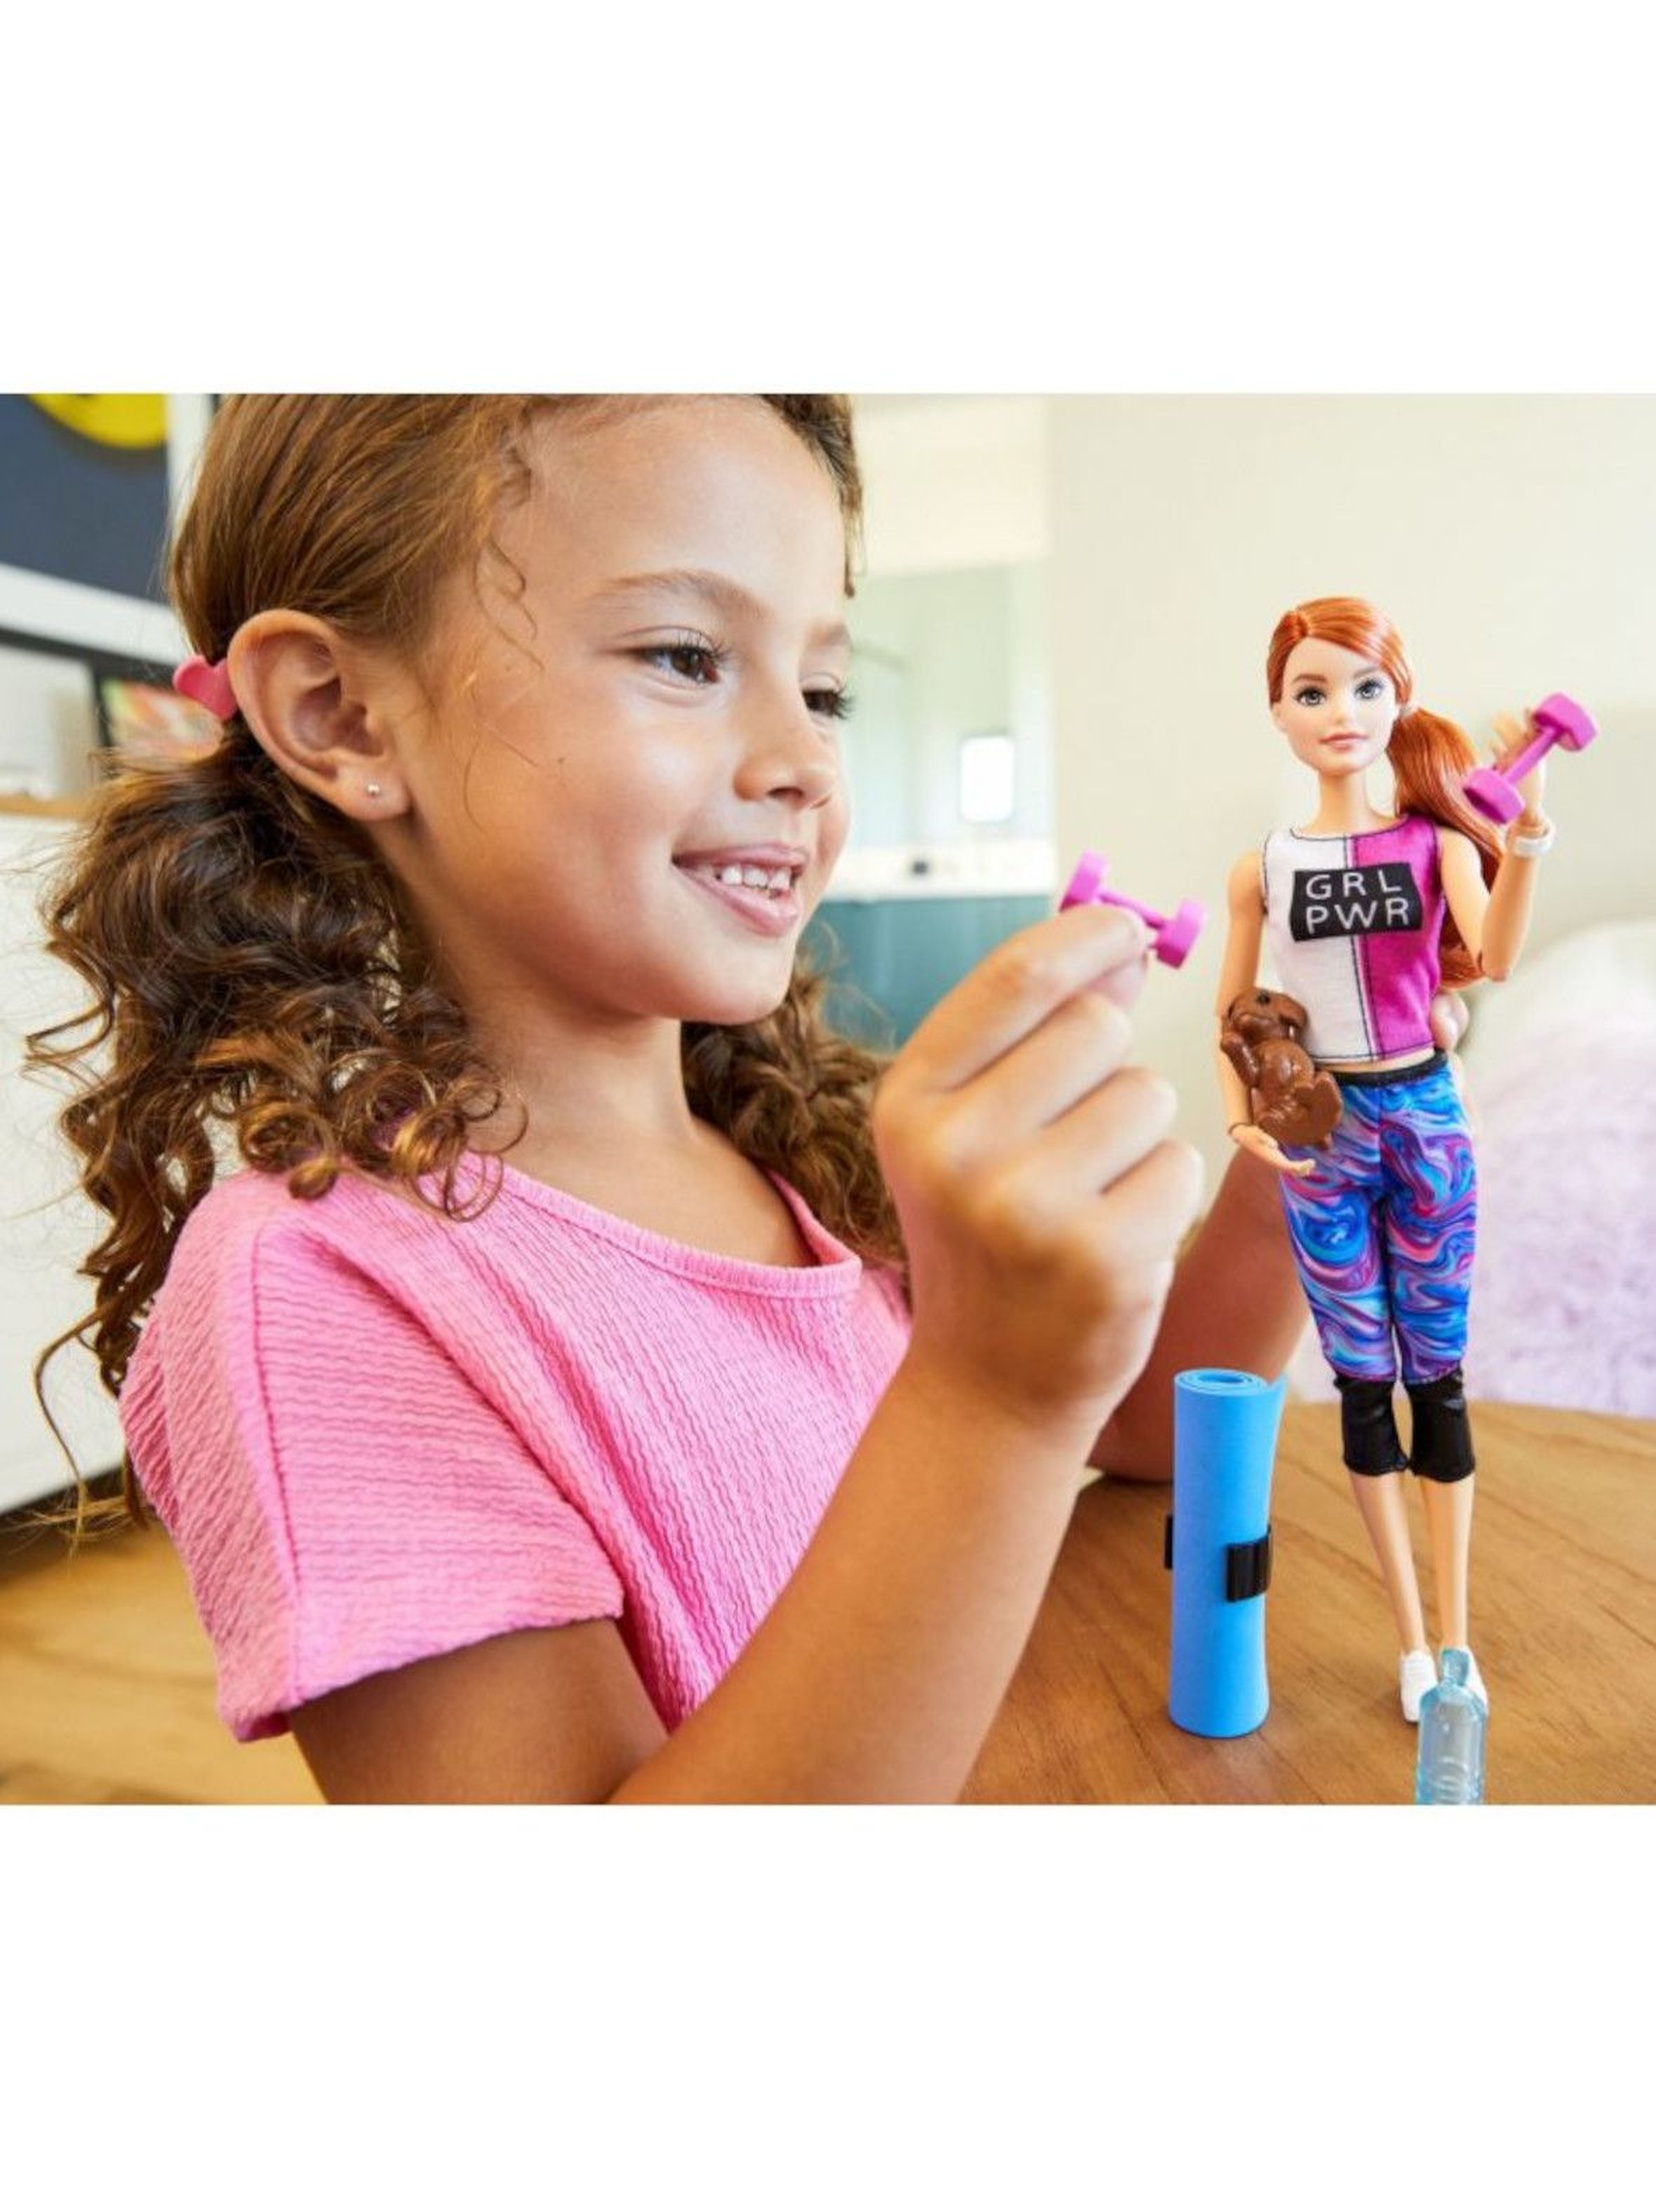 Barbie - Zestaw Relaks na siłowni Lalka z pieskiem i akcesoria wiek 3+